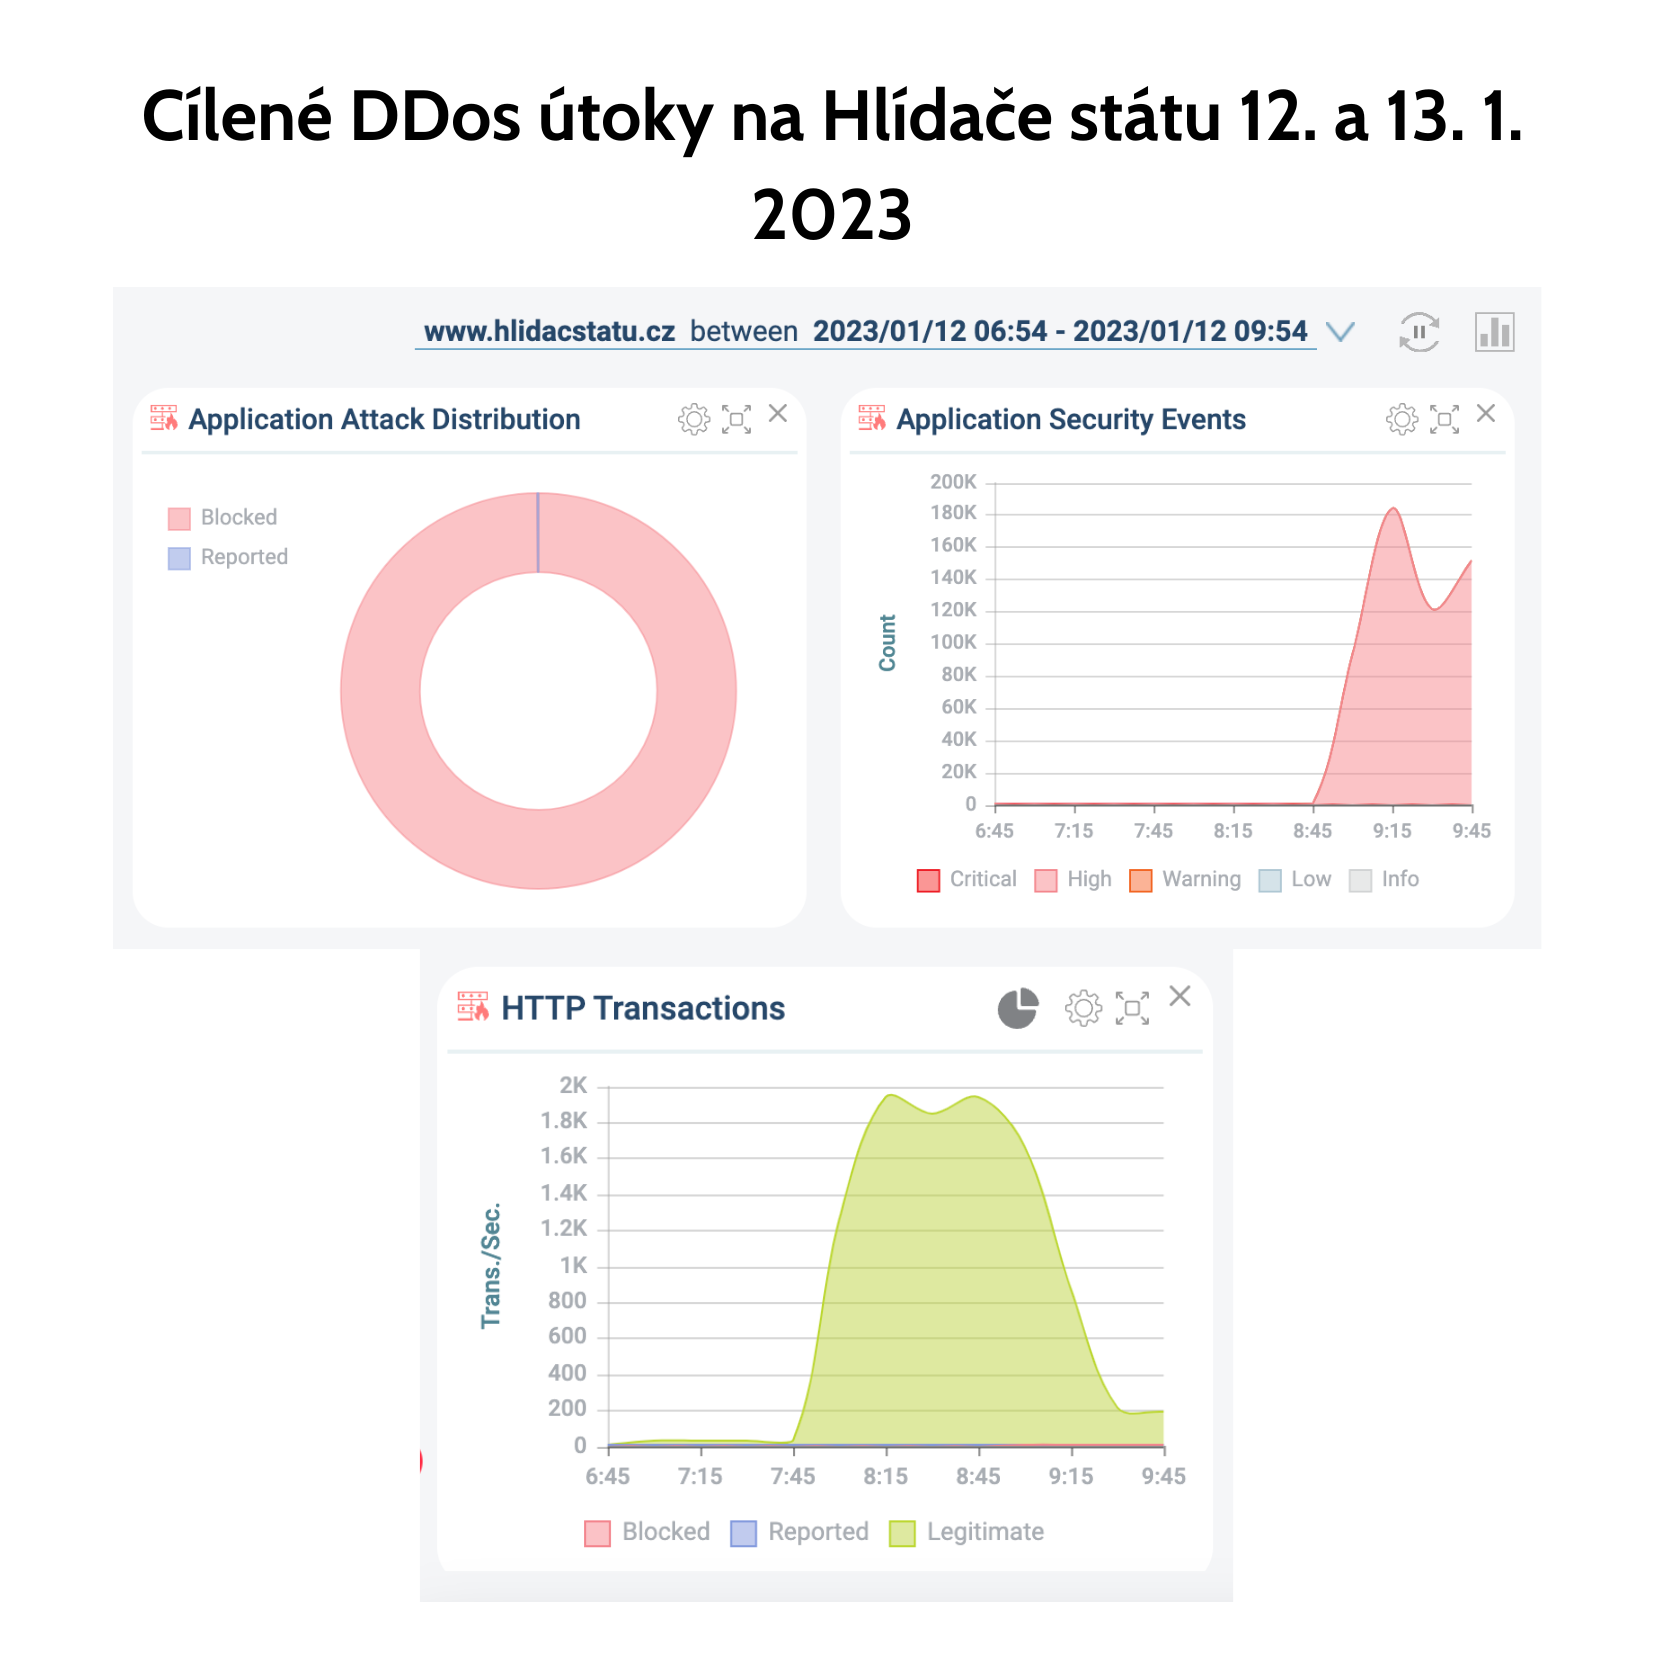 Cílené DDos útoky na Hlídače státu 12. a 13.1. 2023